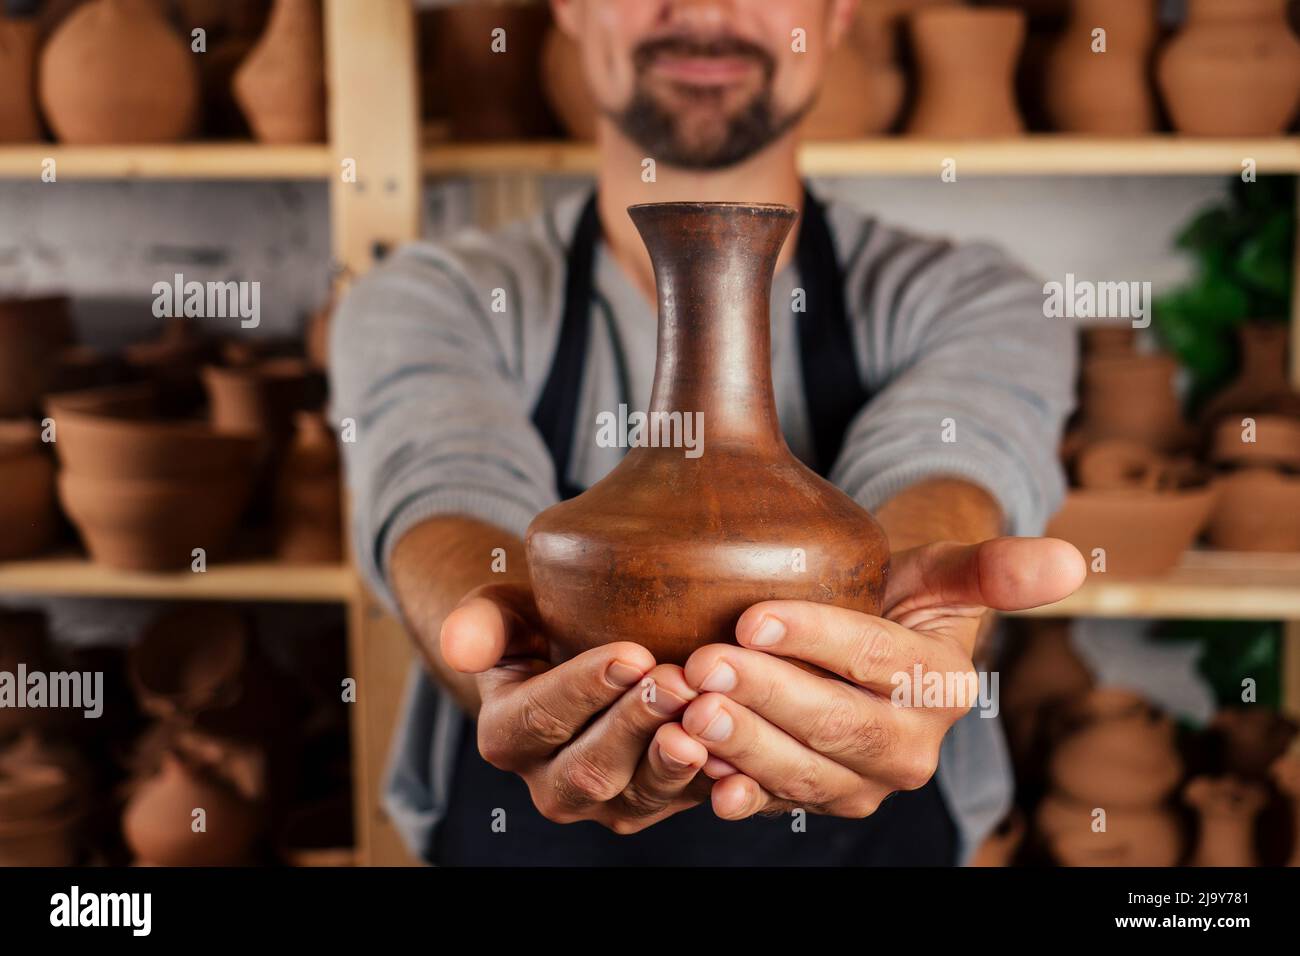 El maestro alfarero en delantal esculpe un tazón profundo de arcilla marrón en una rueda de alfarero en el taller sobre el fondo de estantes con platos Foto de stock